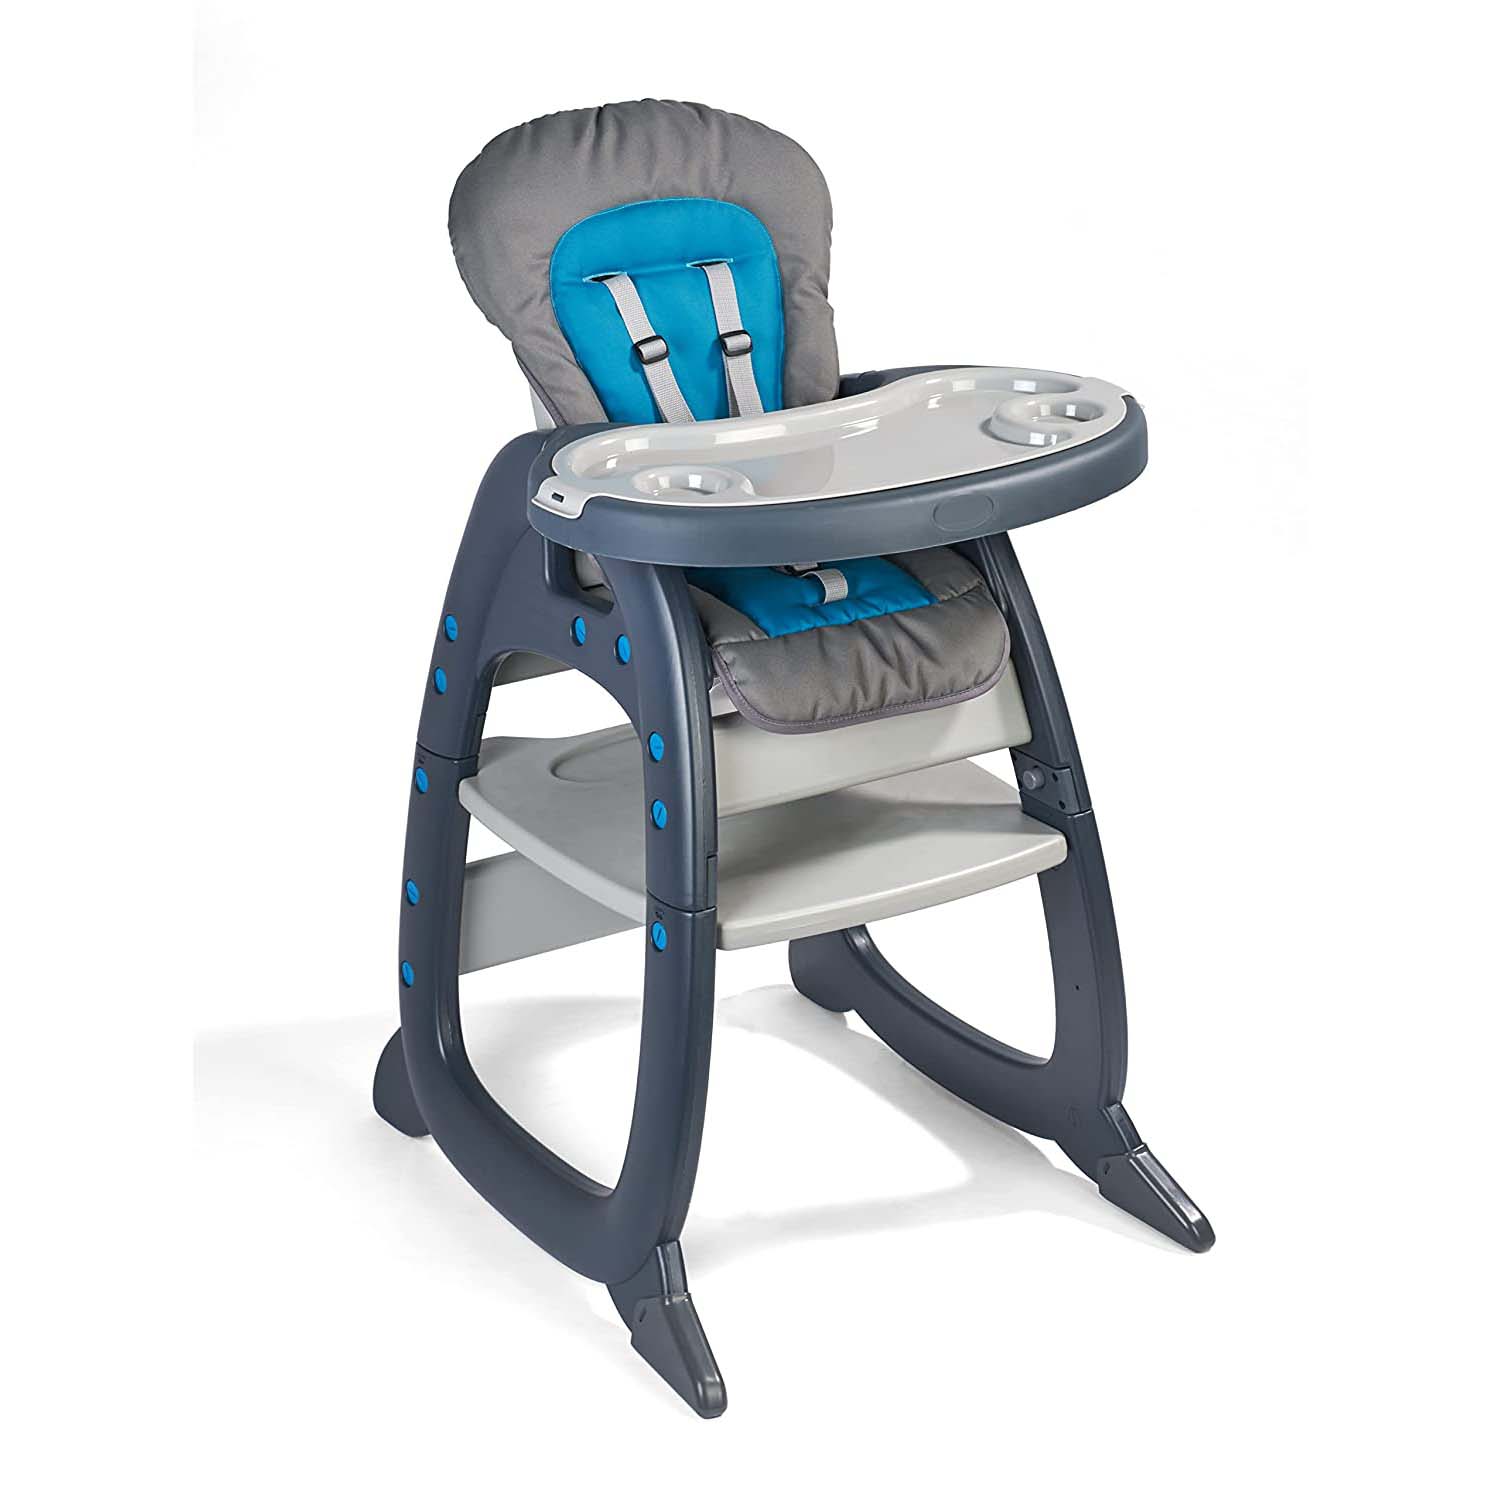 Детский стульчик-трансформер Badger Basket Envee II, серый/бирюзовый стульчик для кормления bch668b karikids